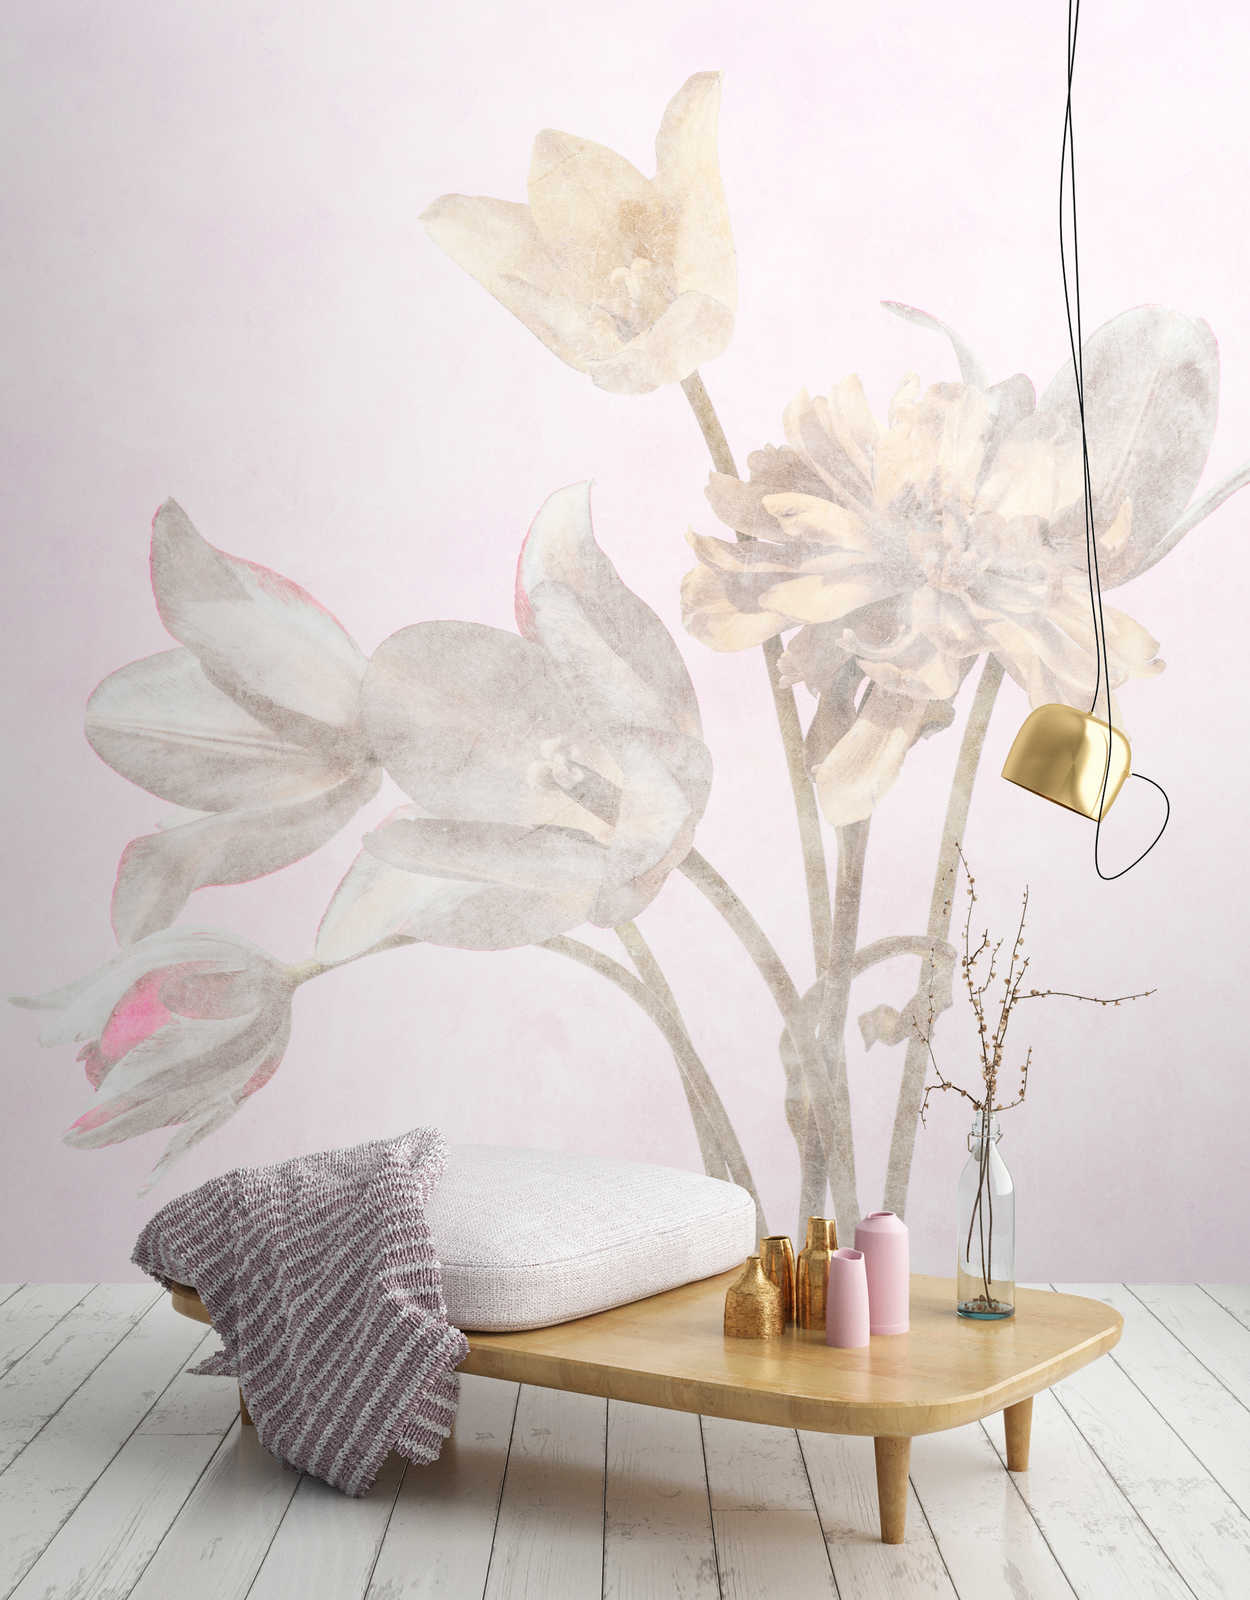             Morning Room 1 - Fleurs Papier peint Fleuri dans le style fané
        